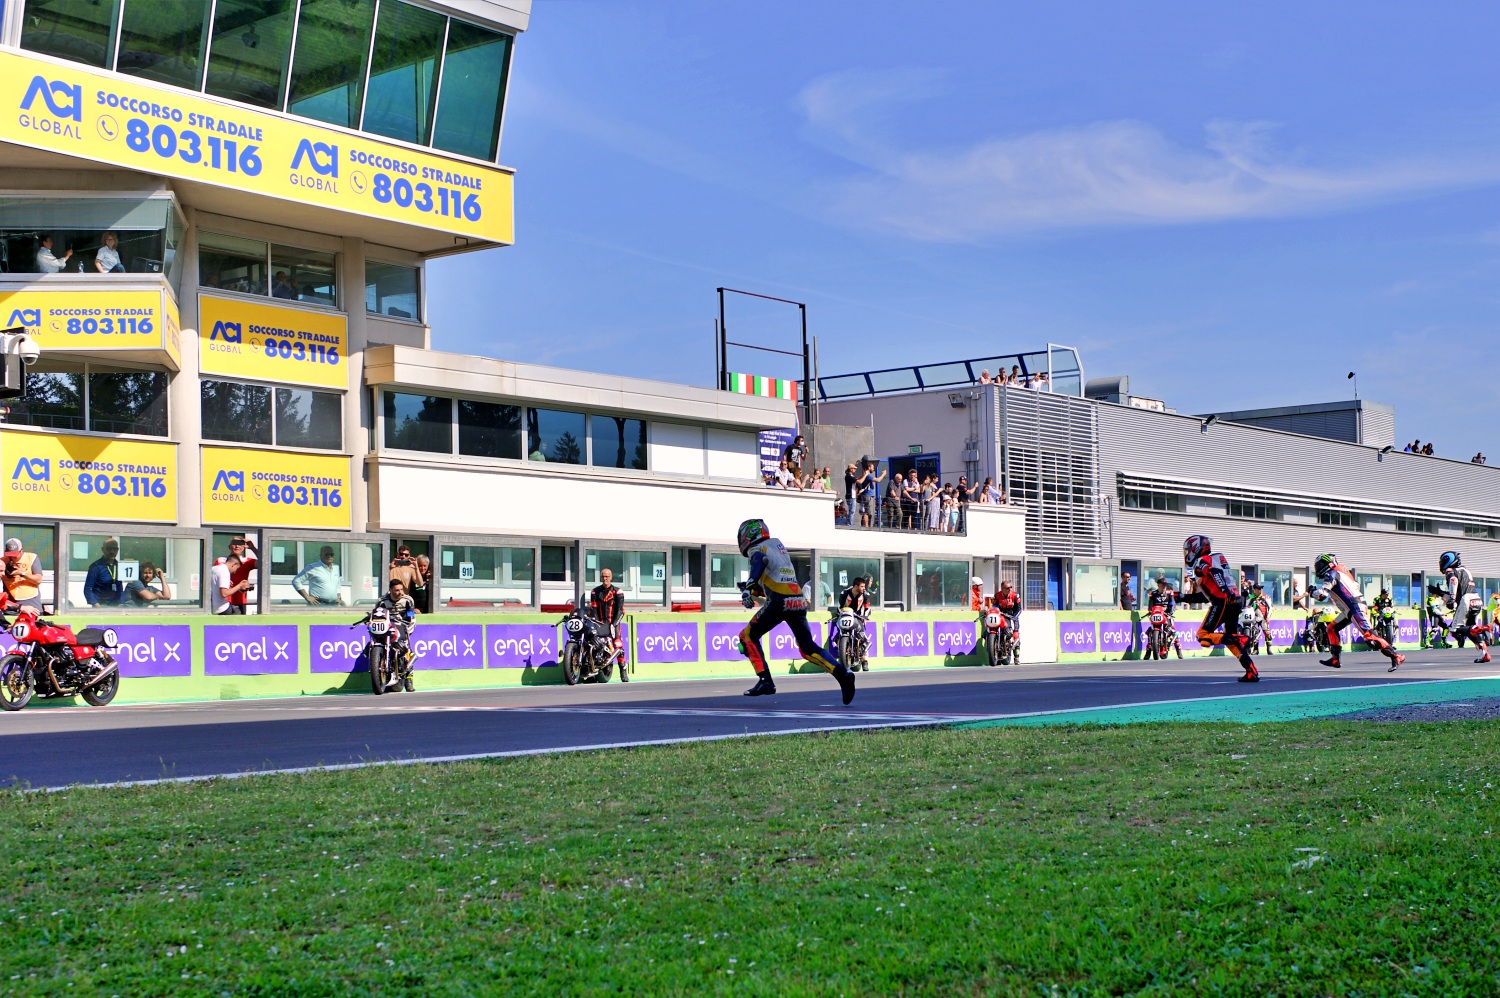 Il Trofeo Moto Guzzi Fast Endurance torna a far sognare. sul circuito di Vallelunga la nuova Moto Guzzi V7 ha dato grande spettacolo. 